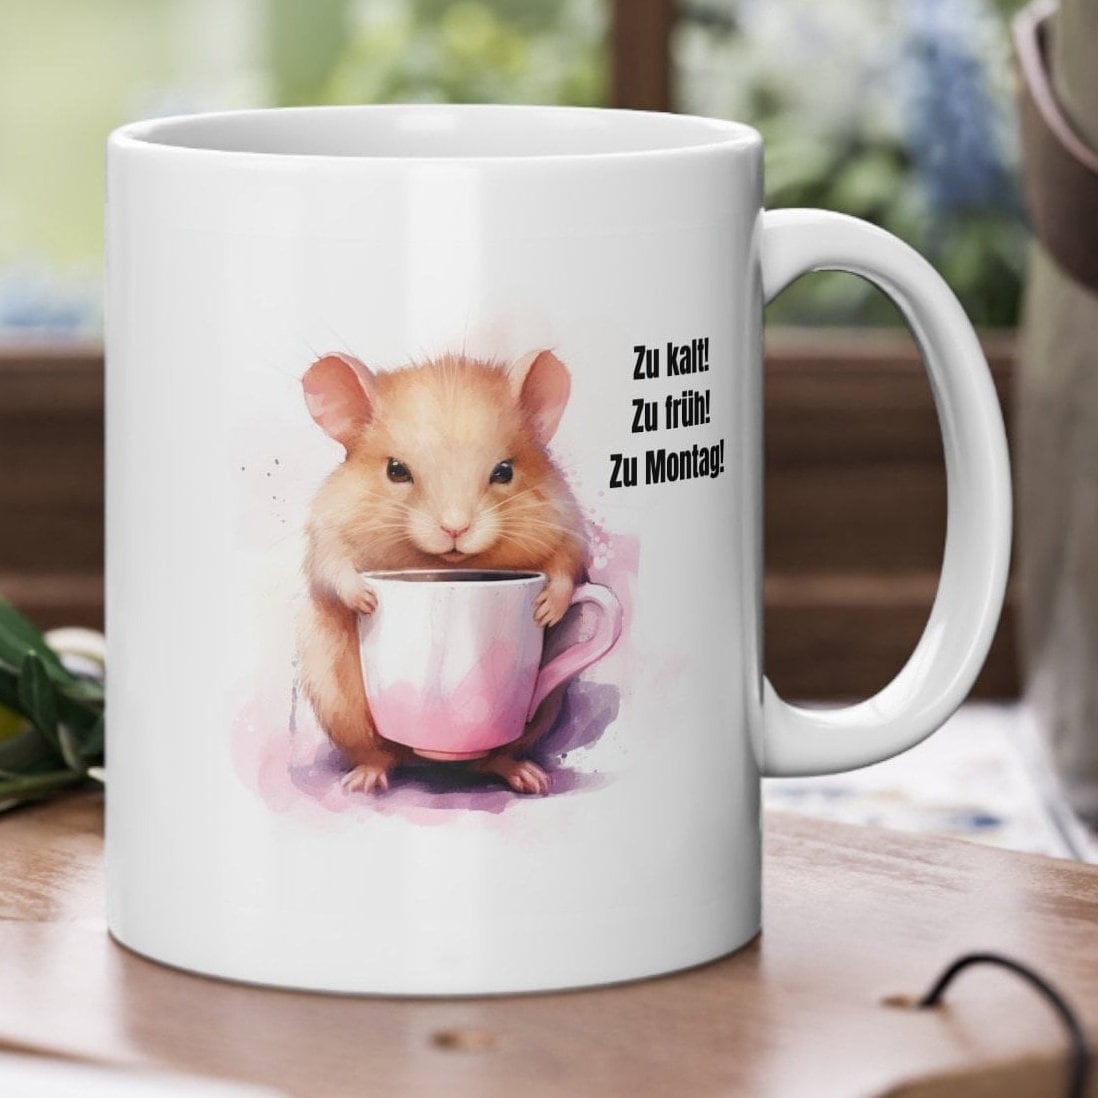 Sonnenschutz Hamster mit Hut - Weiß - Geschenk, Zwerghamster, lustige  Sprüche, Son, Mr. & Mrs. Panda, Seidenmatt